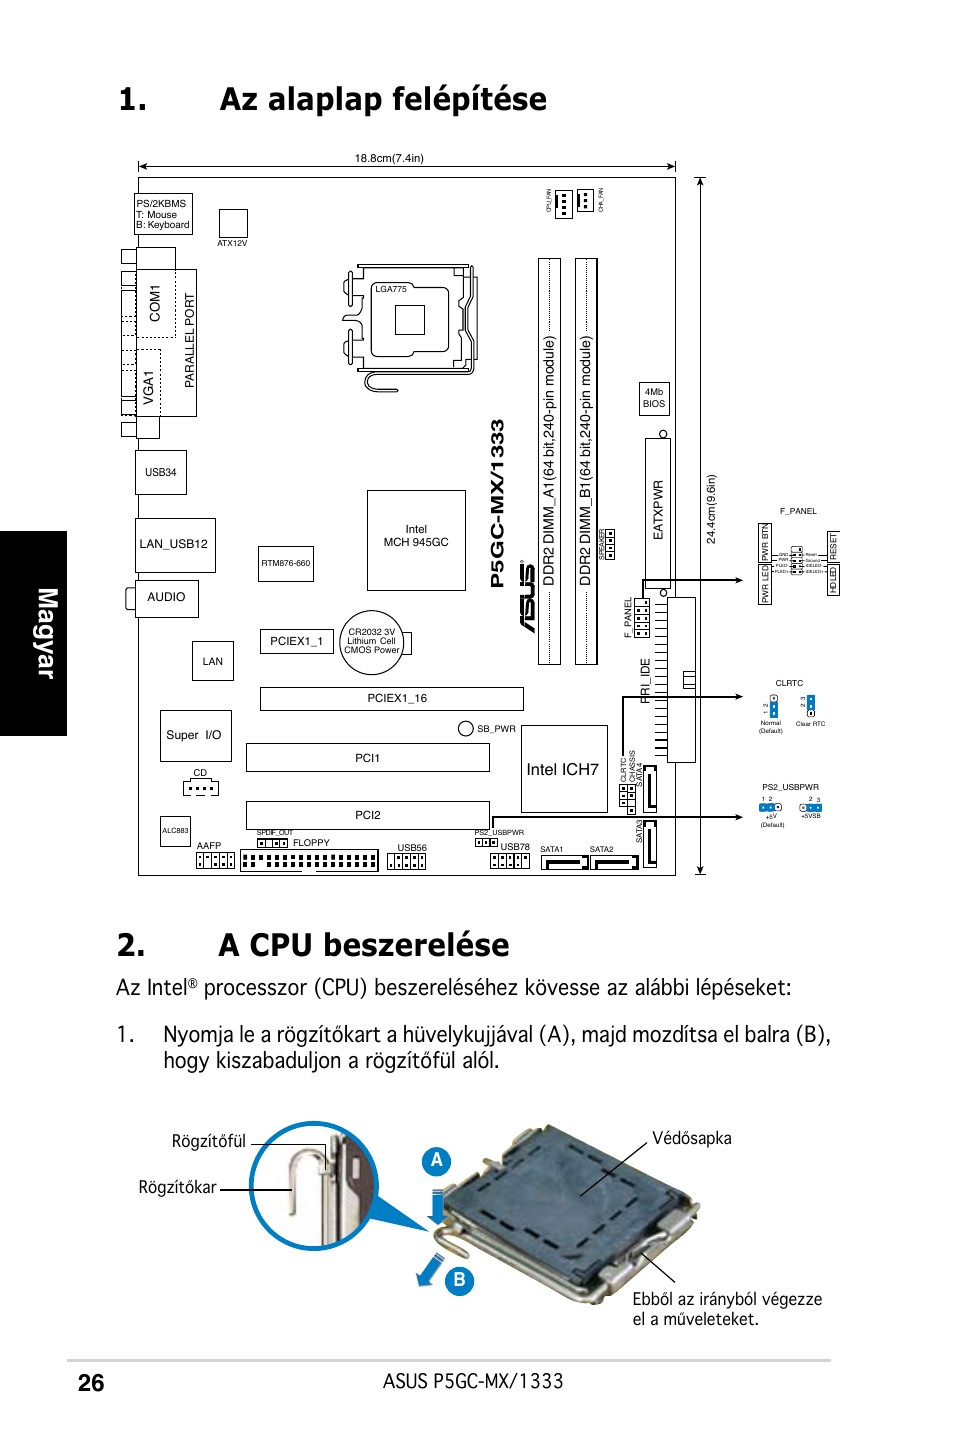 Az alaplap felépítése 2. a cpu beszerelése, Magyar, Az intel | Asus P5GC-MX/ 1333 User Manual | Page 26 / 38 | Original mode